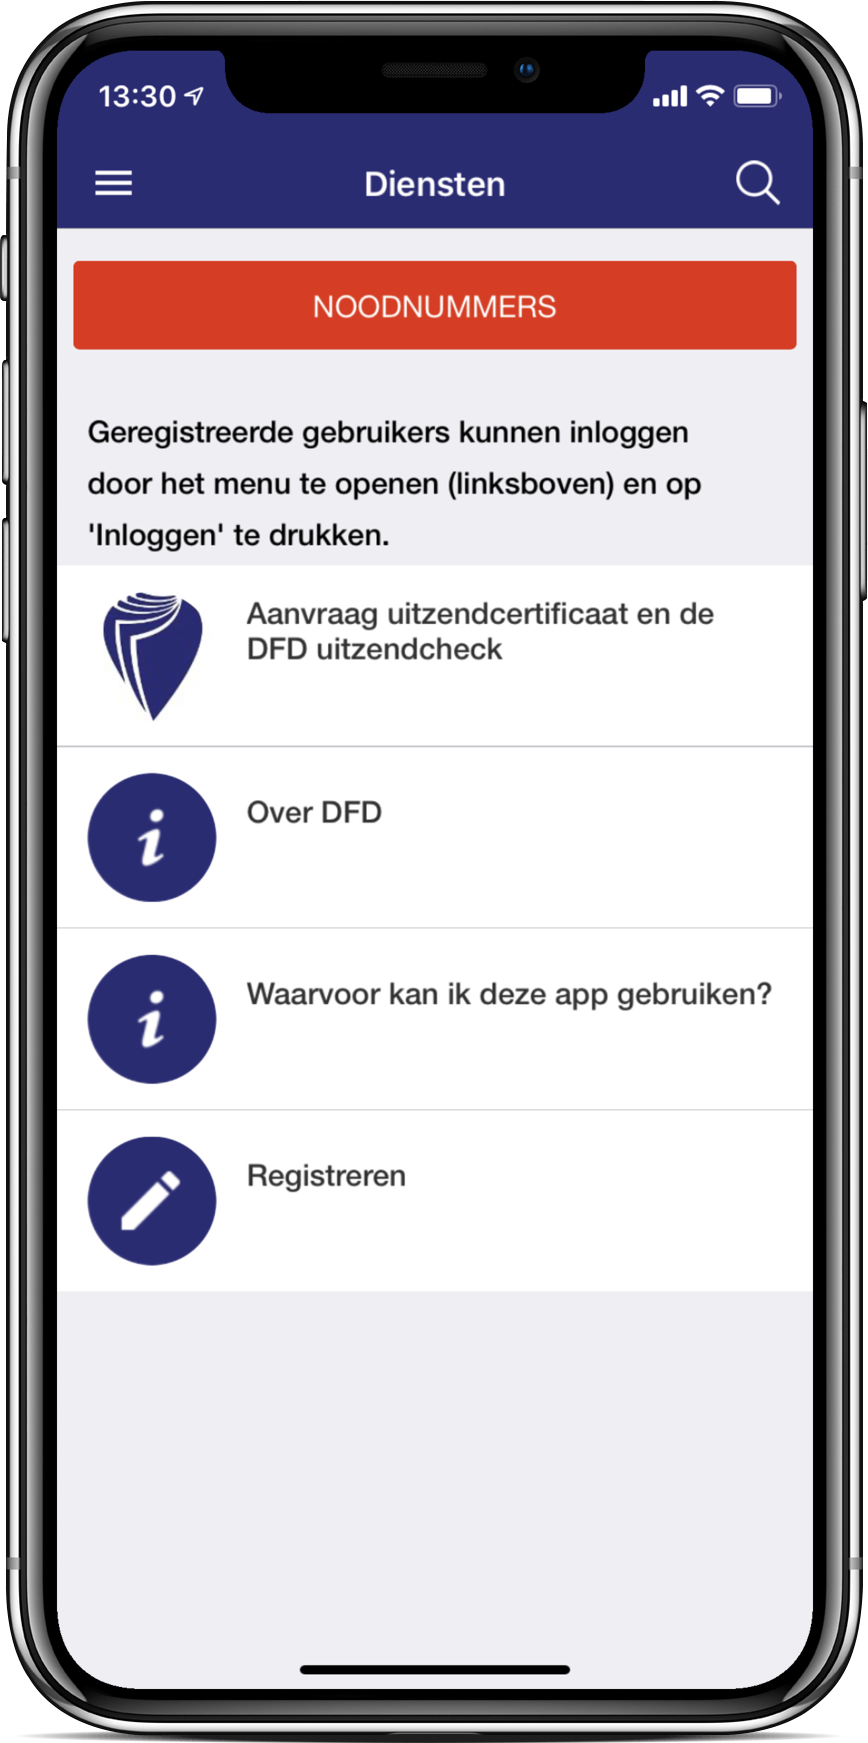 De financiële dienstverlener verzekering gegevens 24/7 beschikbaar via iOS & Android app